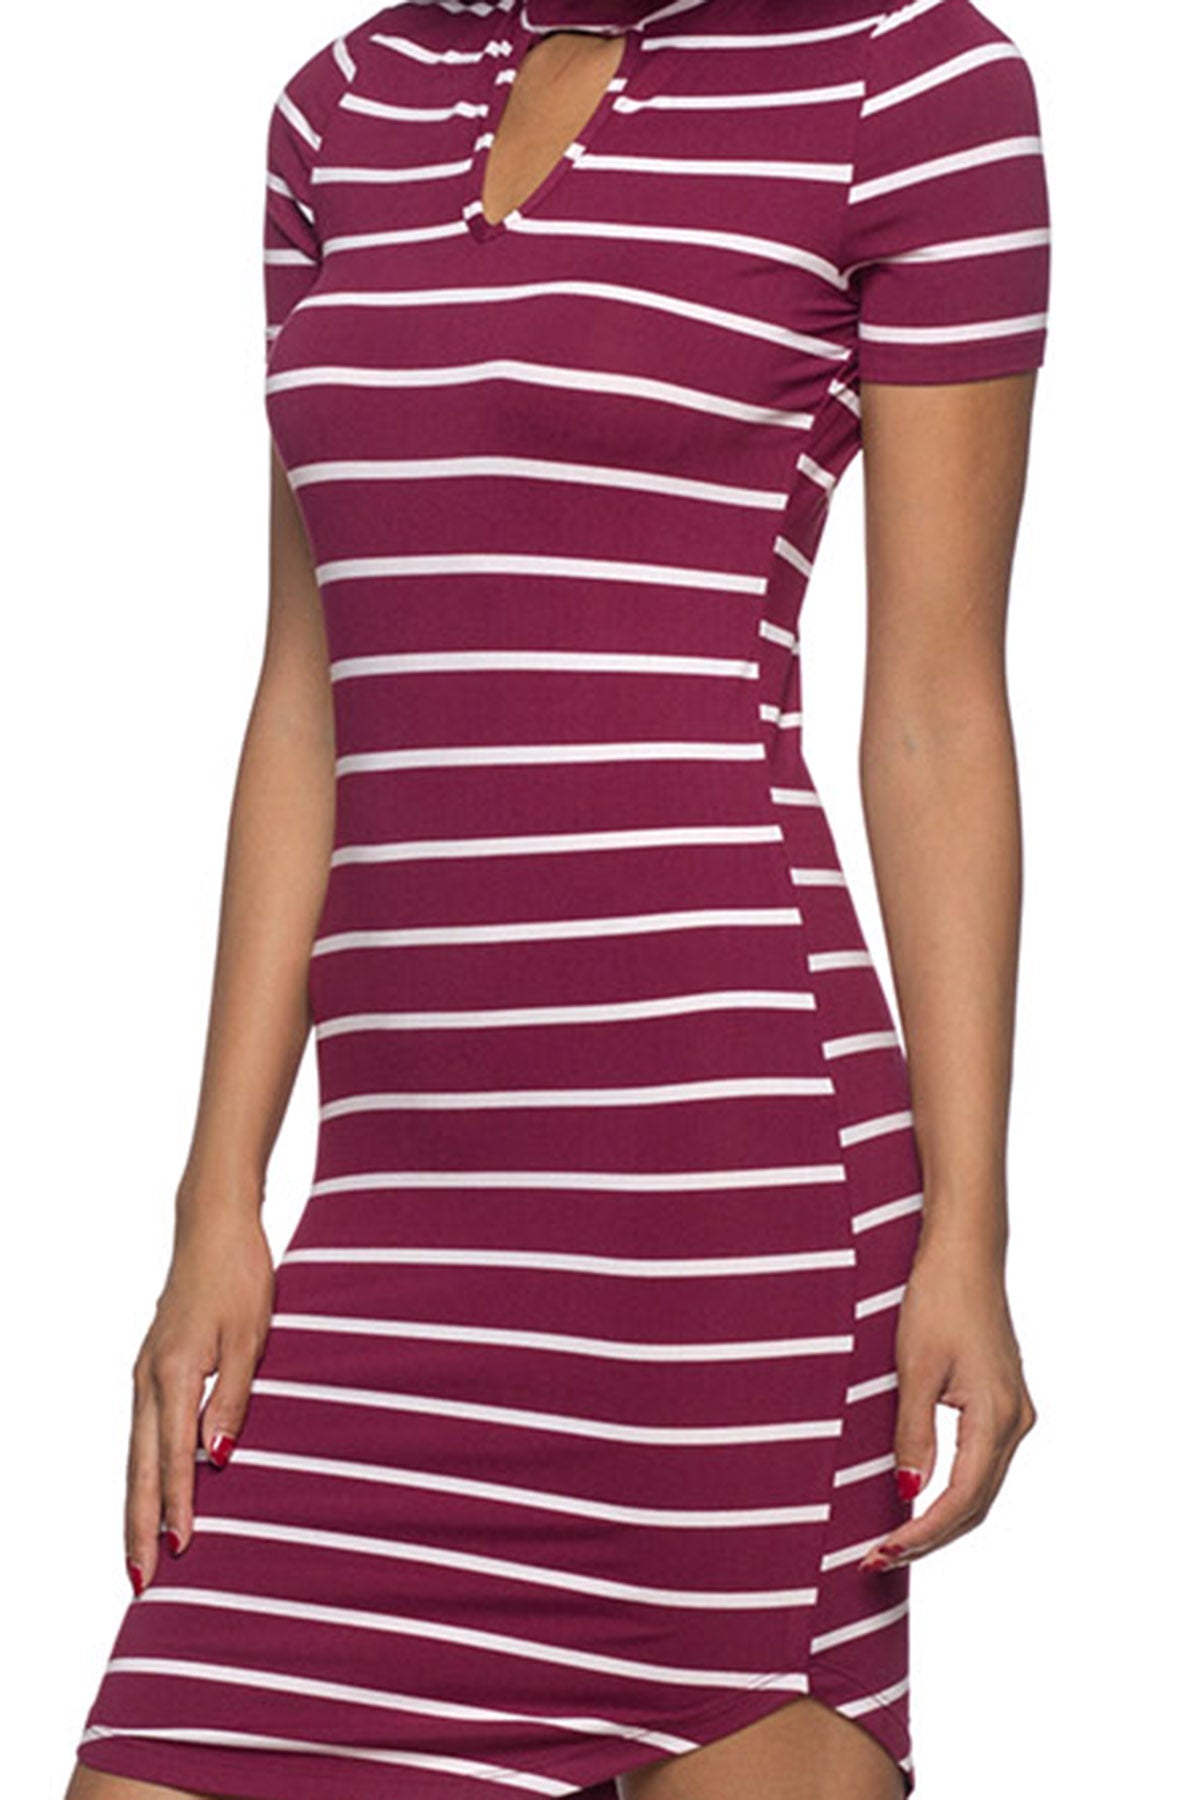 [$3/piece] Striped Chocker Neck Bodycon Dress